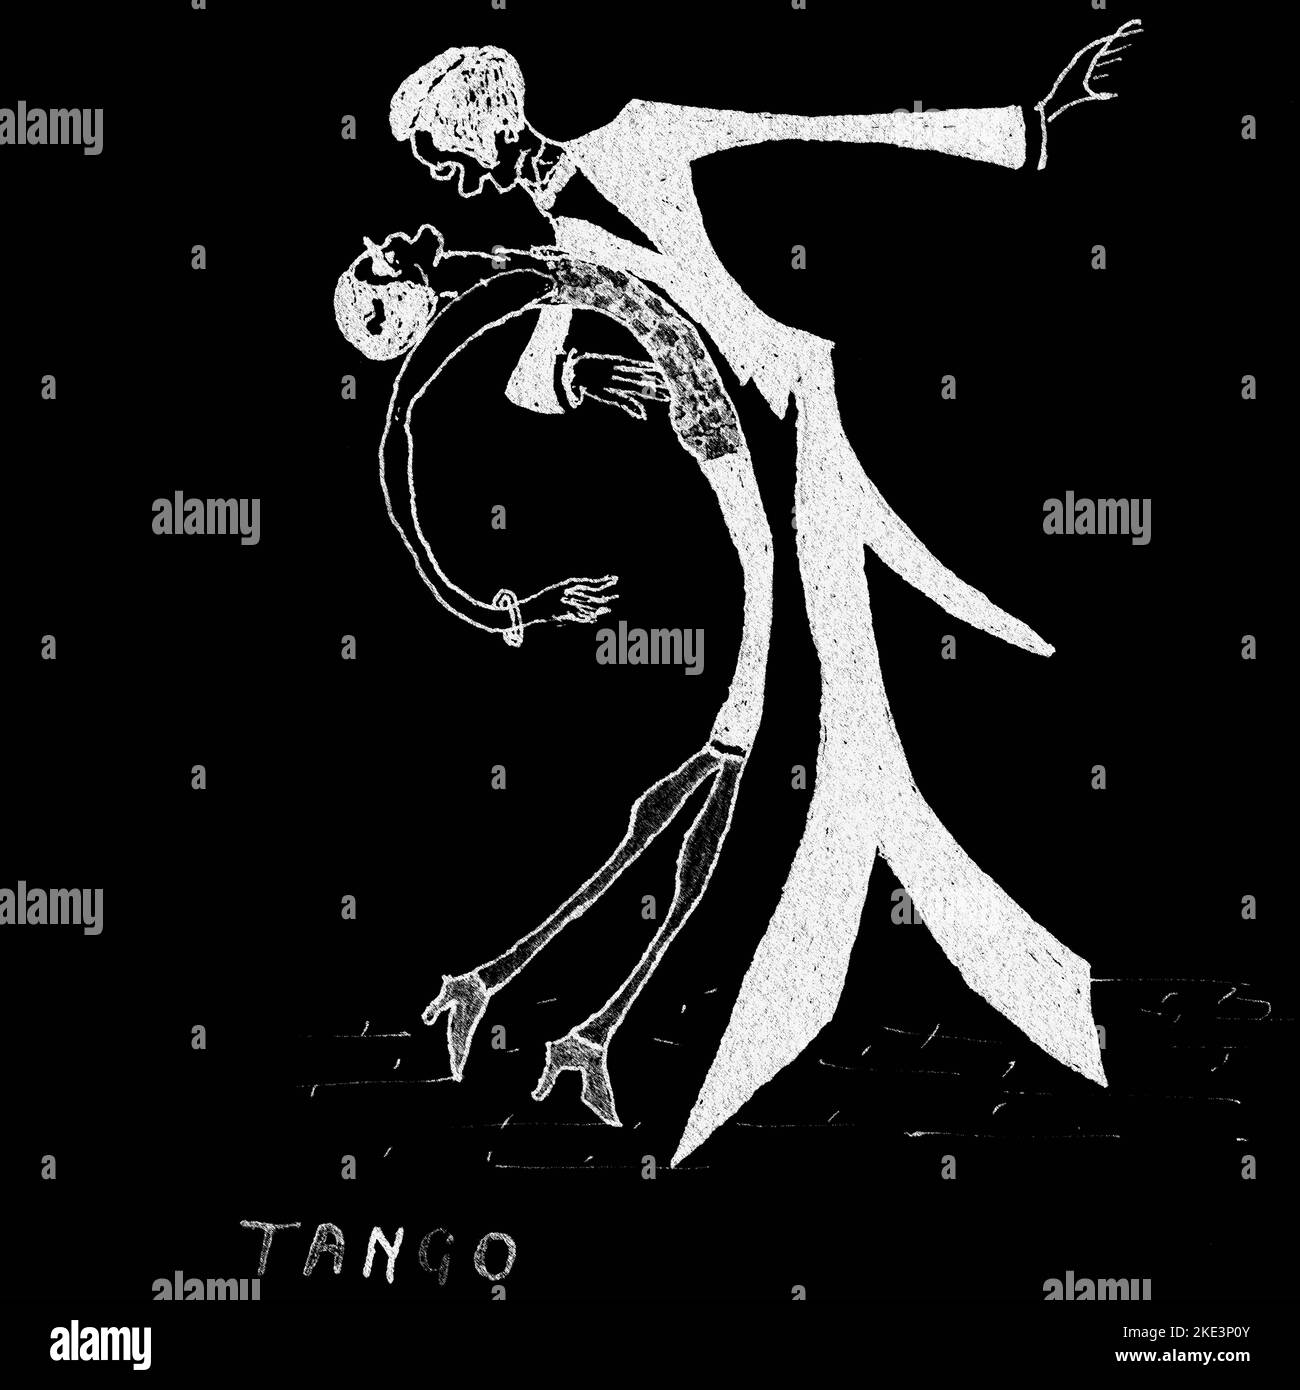 Tango estremo in contrasto estremo: Dettagli in formato quadrato d'arte digitale in bianco e nero di ‘Tango 1926’, un acquerello in stile cubista che raffigura una coppia ultrasottile che proietta una forma curvilinea mentre tango la notte via. L'originale è stato disegnato, dipinto e firmato nel novembre 1925 dall'artista britannico R. Biass, forse come sua previsione di come la mania sudamericana di danza potrebbe svilupparsi. Foto Stock